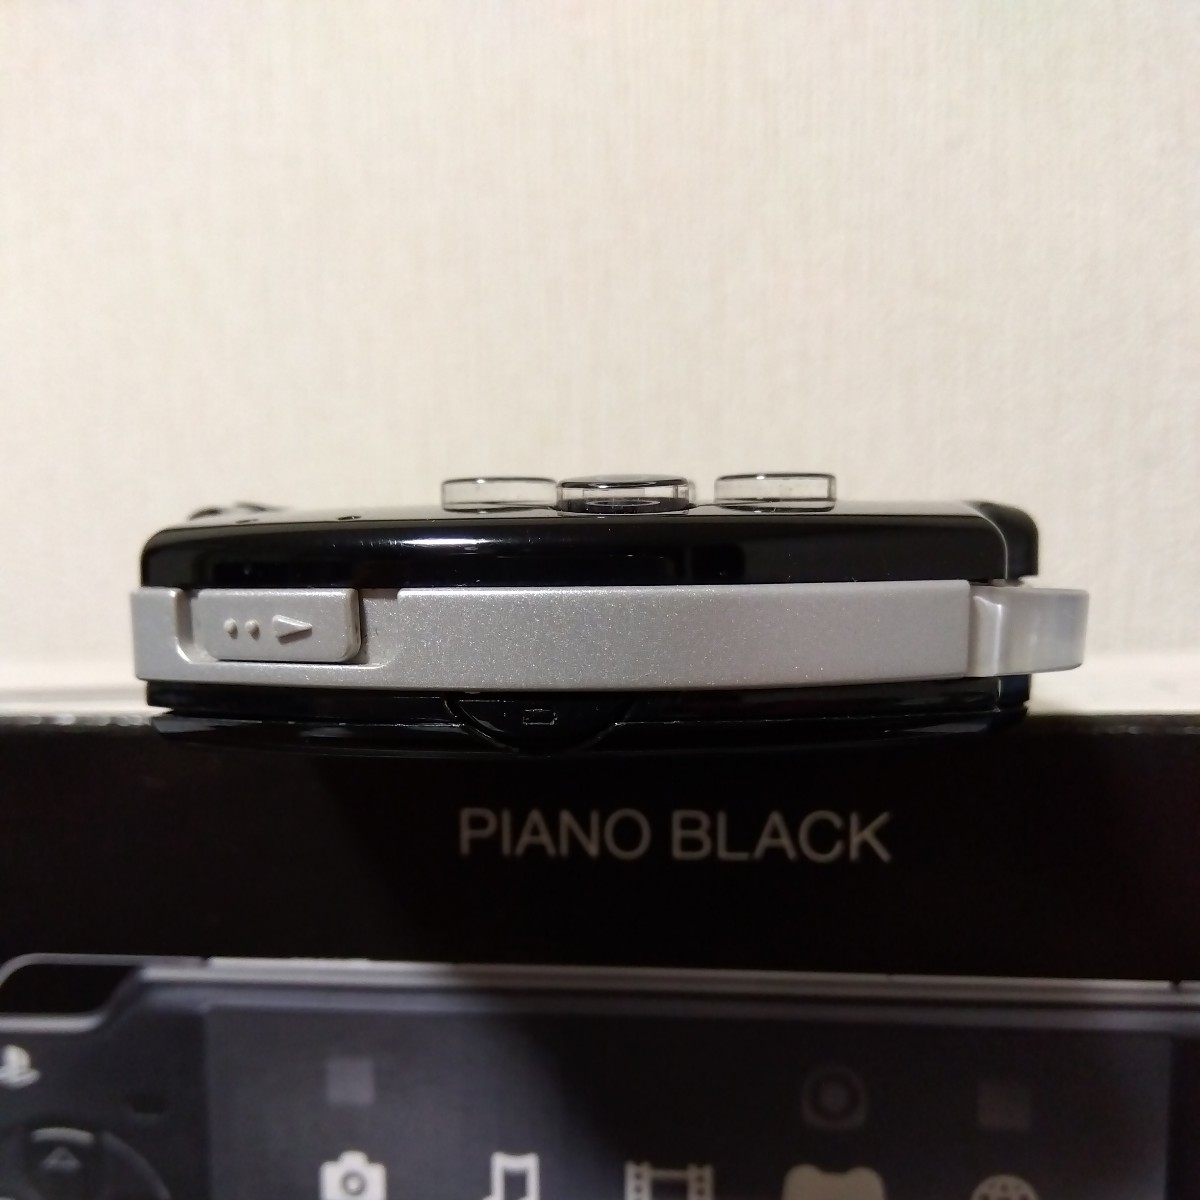 SONY プレイステーションポータブル PSP-2000 PB ピアノブラック 本体 アダプター 箱 説明書等あり バッテリーなし_画像5